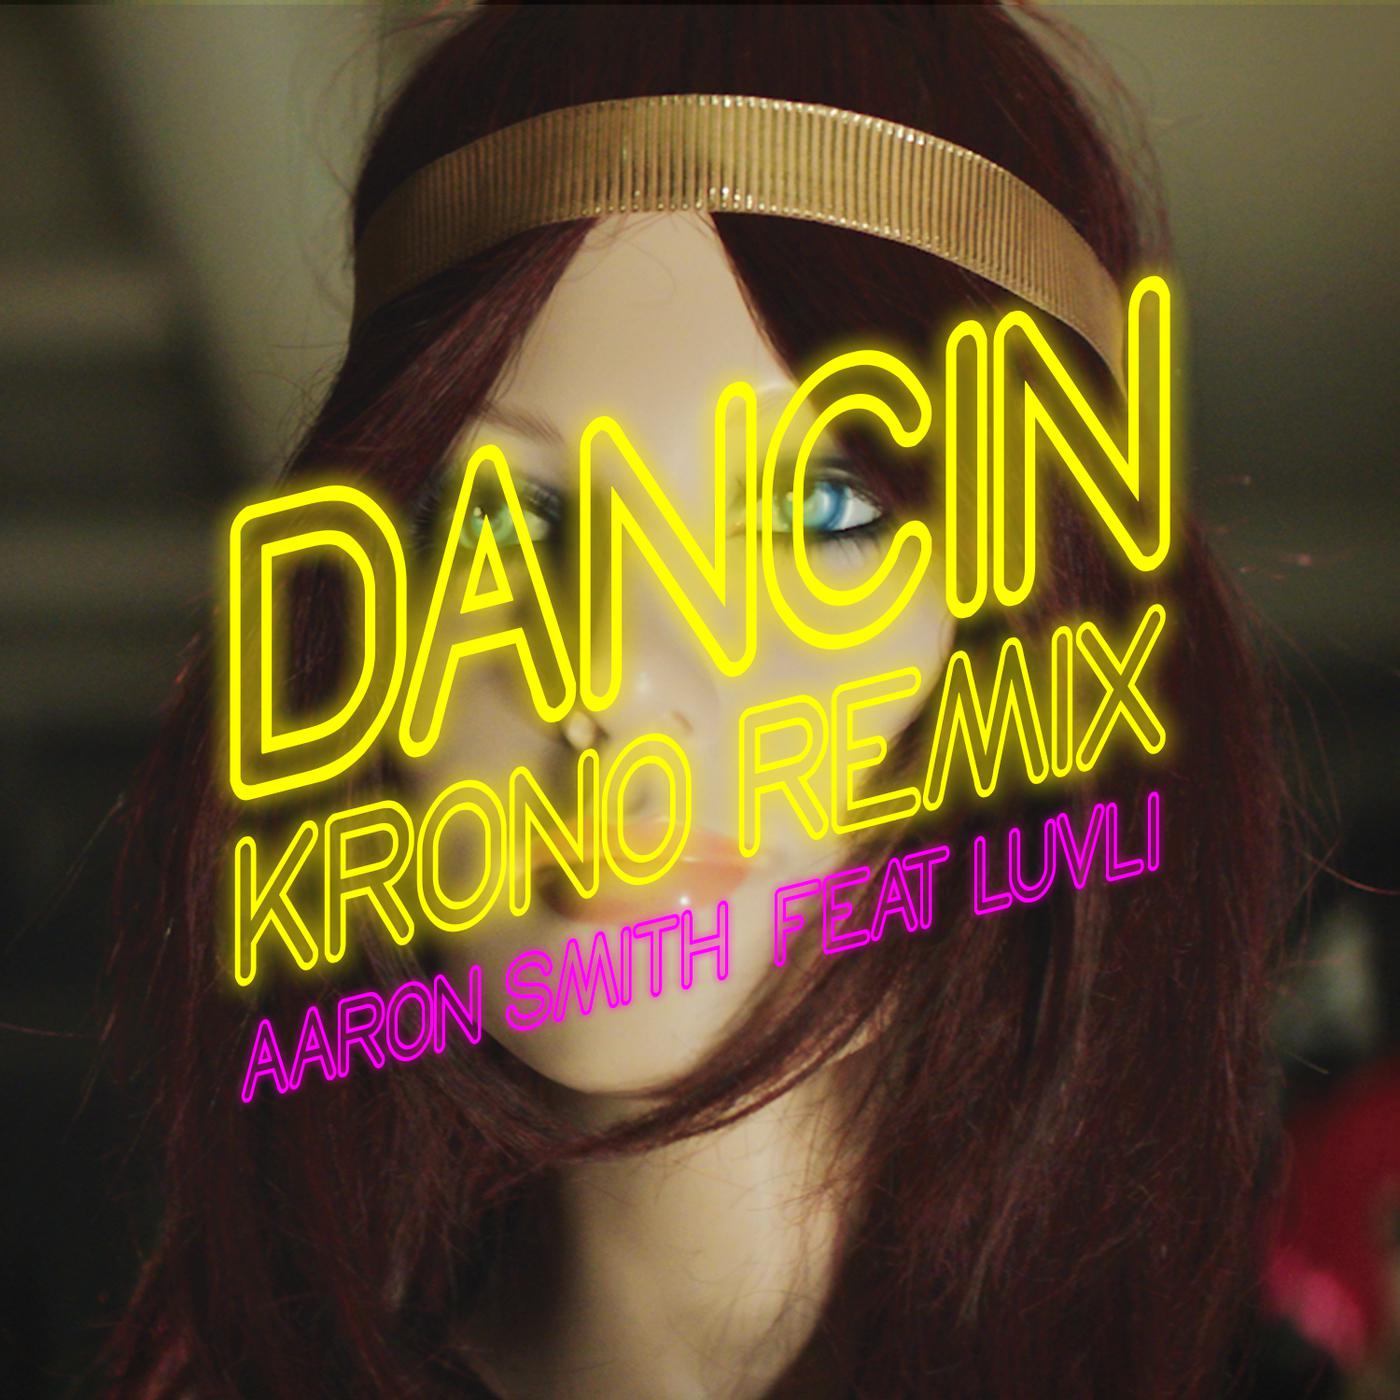 Dance of dancing remix. Aaron Smith, Luvli Dancin. Aaron Smith Dancin Luvli Krono Remix. Dancin Krono Remix.